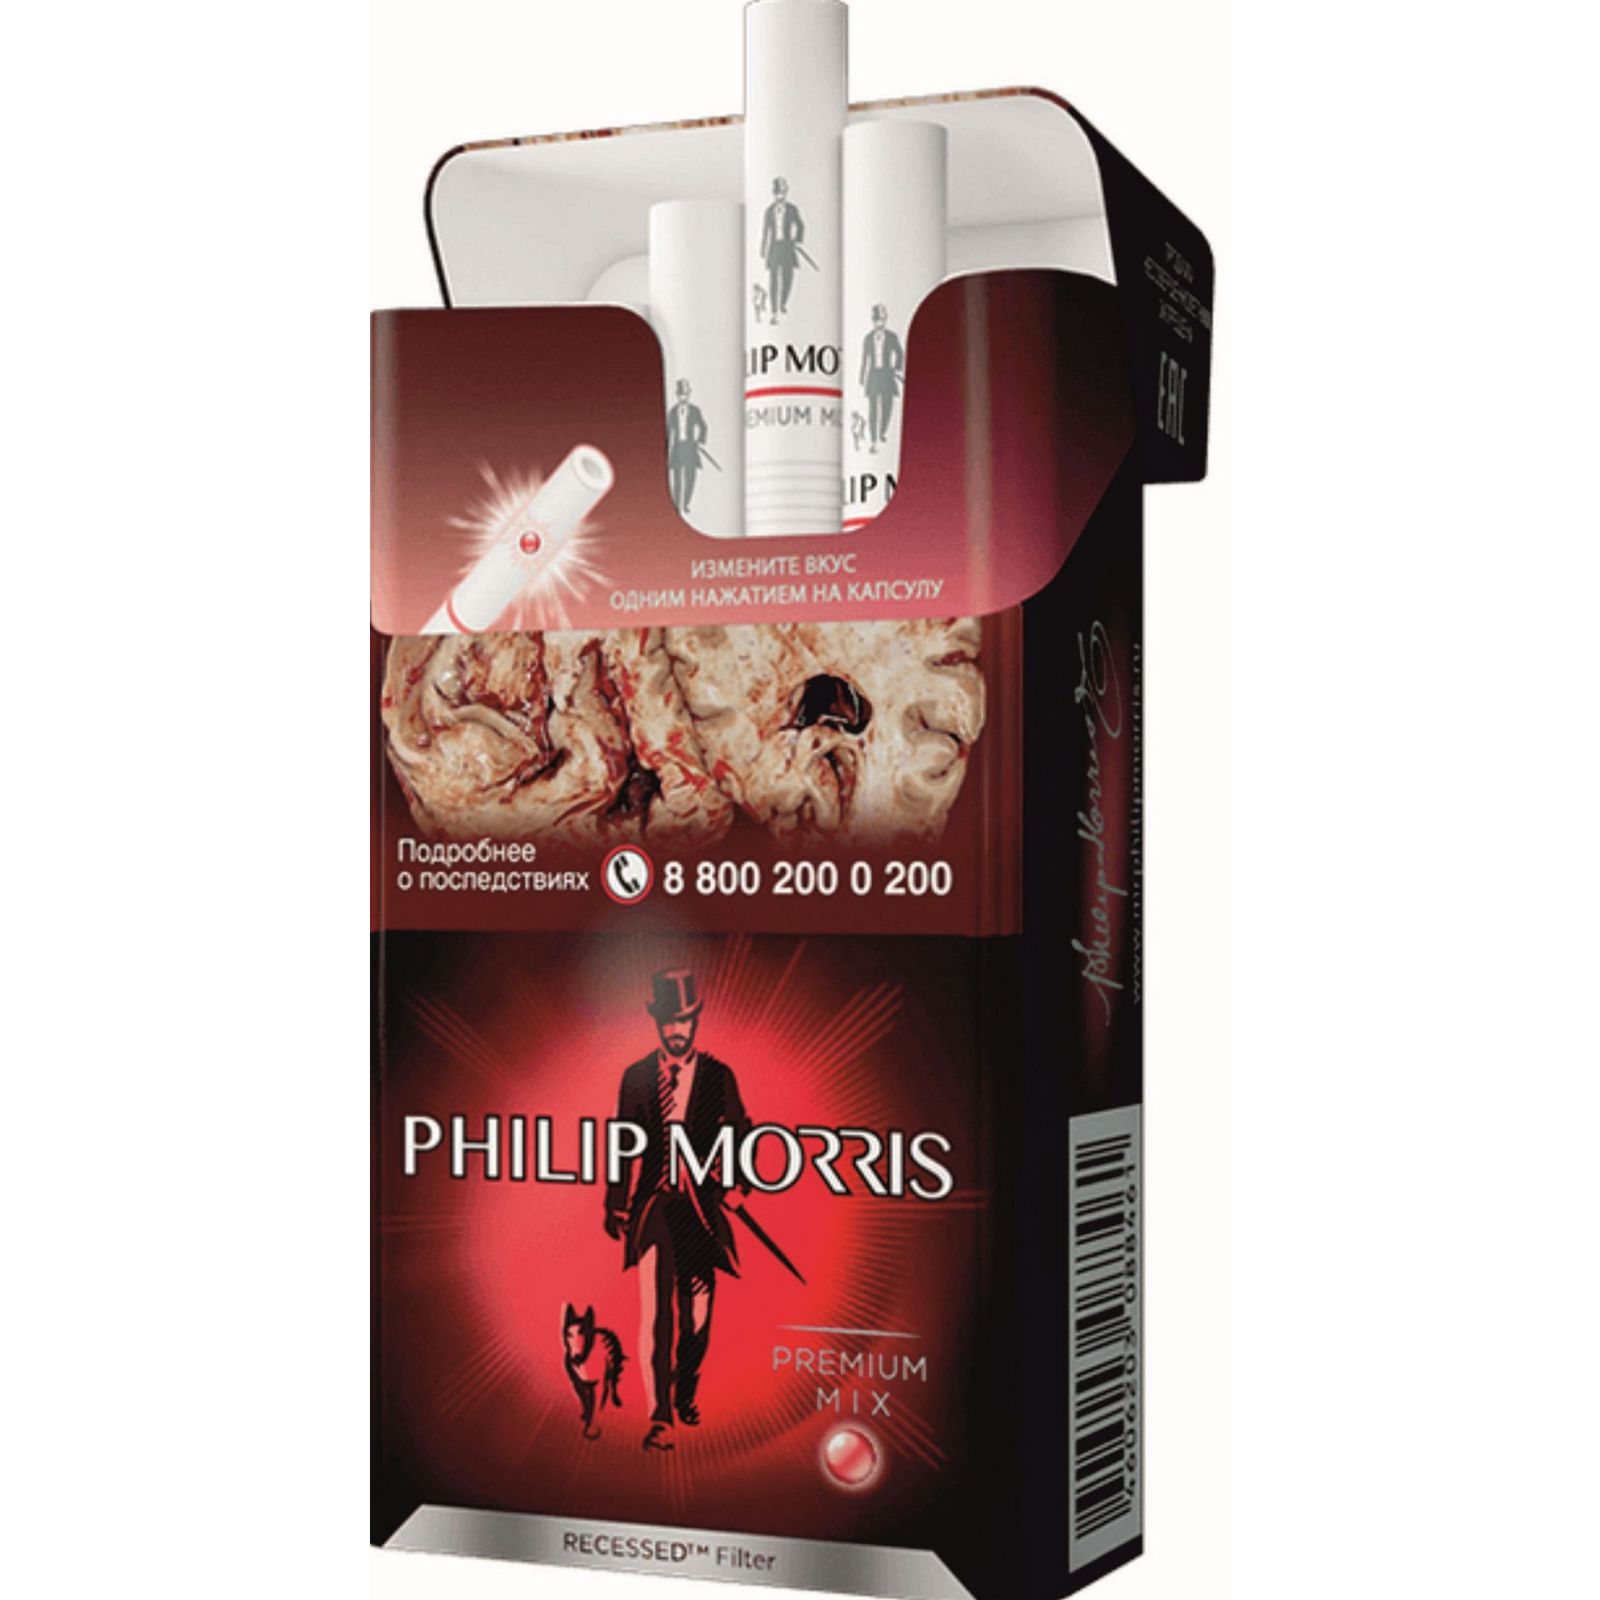 Сигареты Philip Morris Premium. Philip Morris Compact Premium МТ. Philip Morris Compact Premium яркий МТ. Philip Morris Compact Солнечный. Сигареты филипс